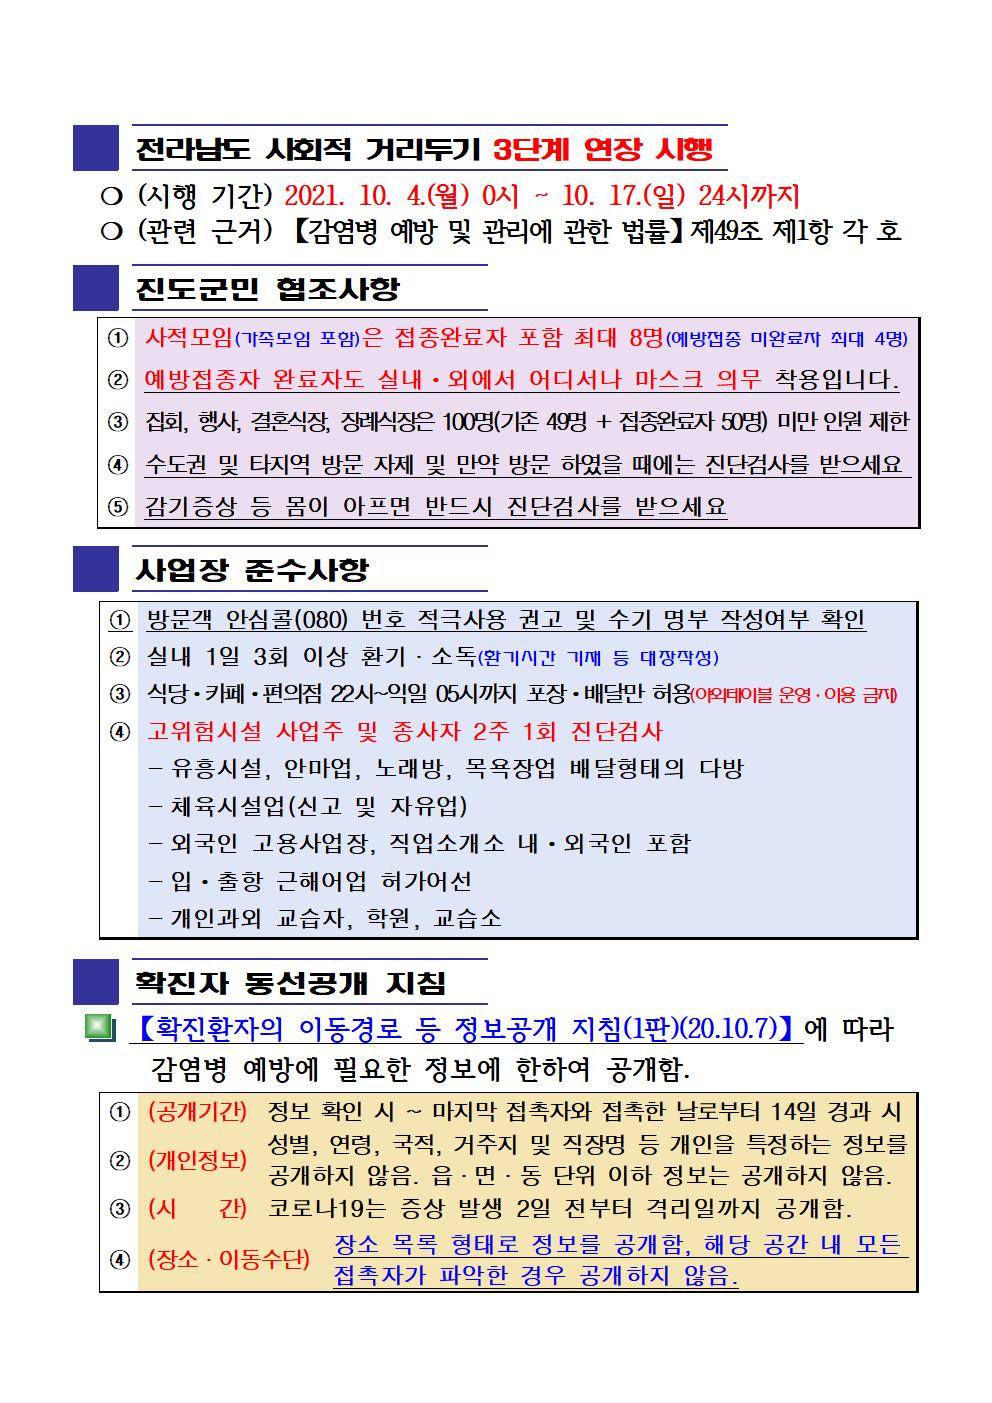 2021년 코로나19 대응 일일상황보고(10월 5일 24시 기준) 첨부#2